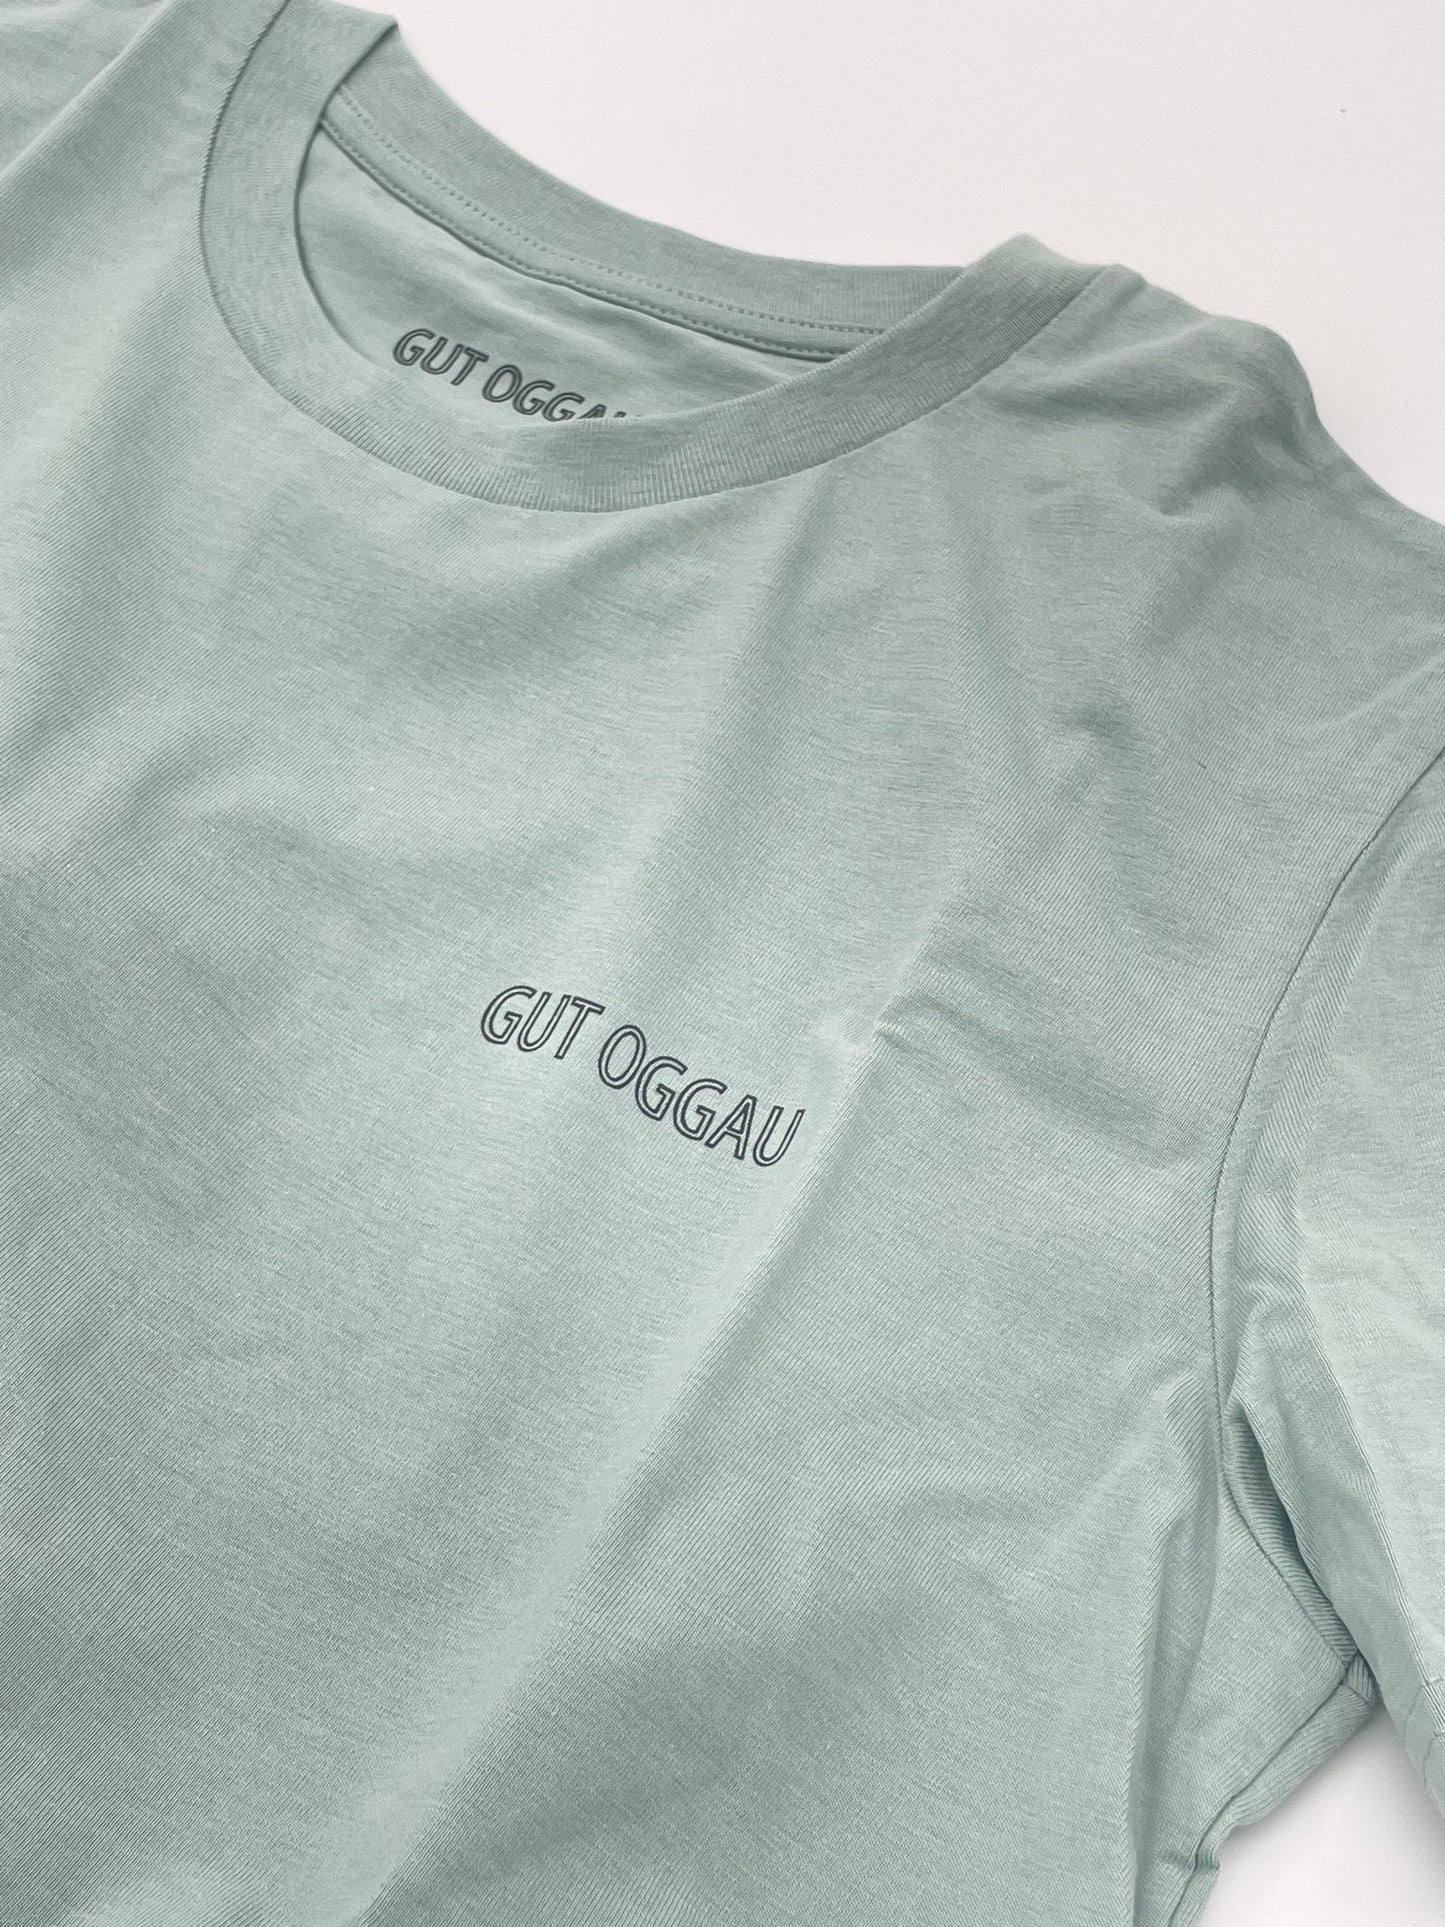 Gut Oggau T-Shirt / Cecilia